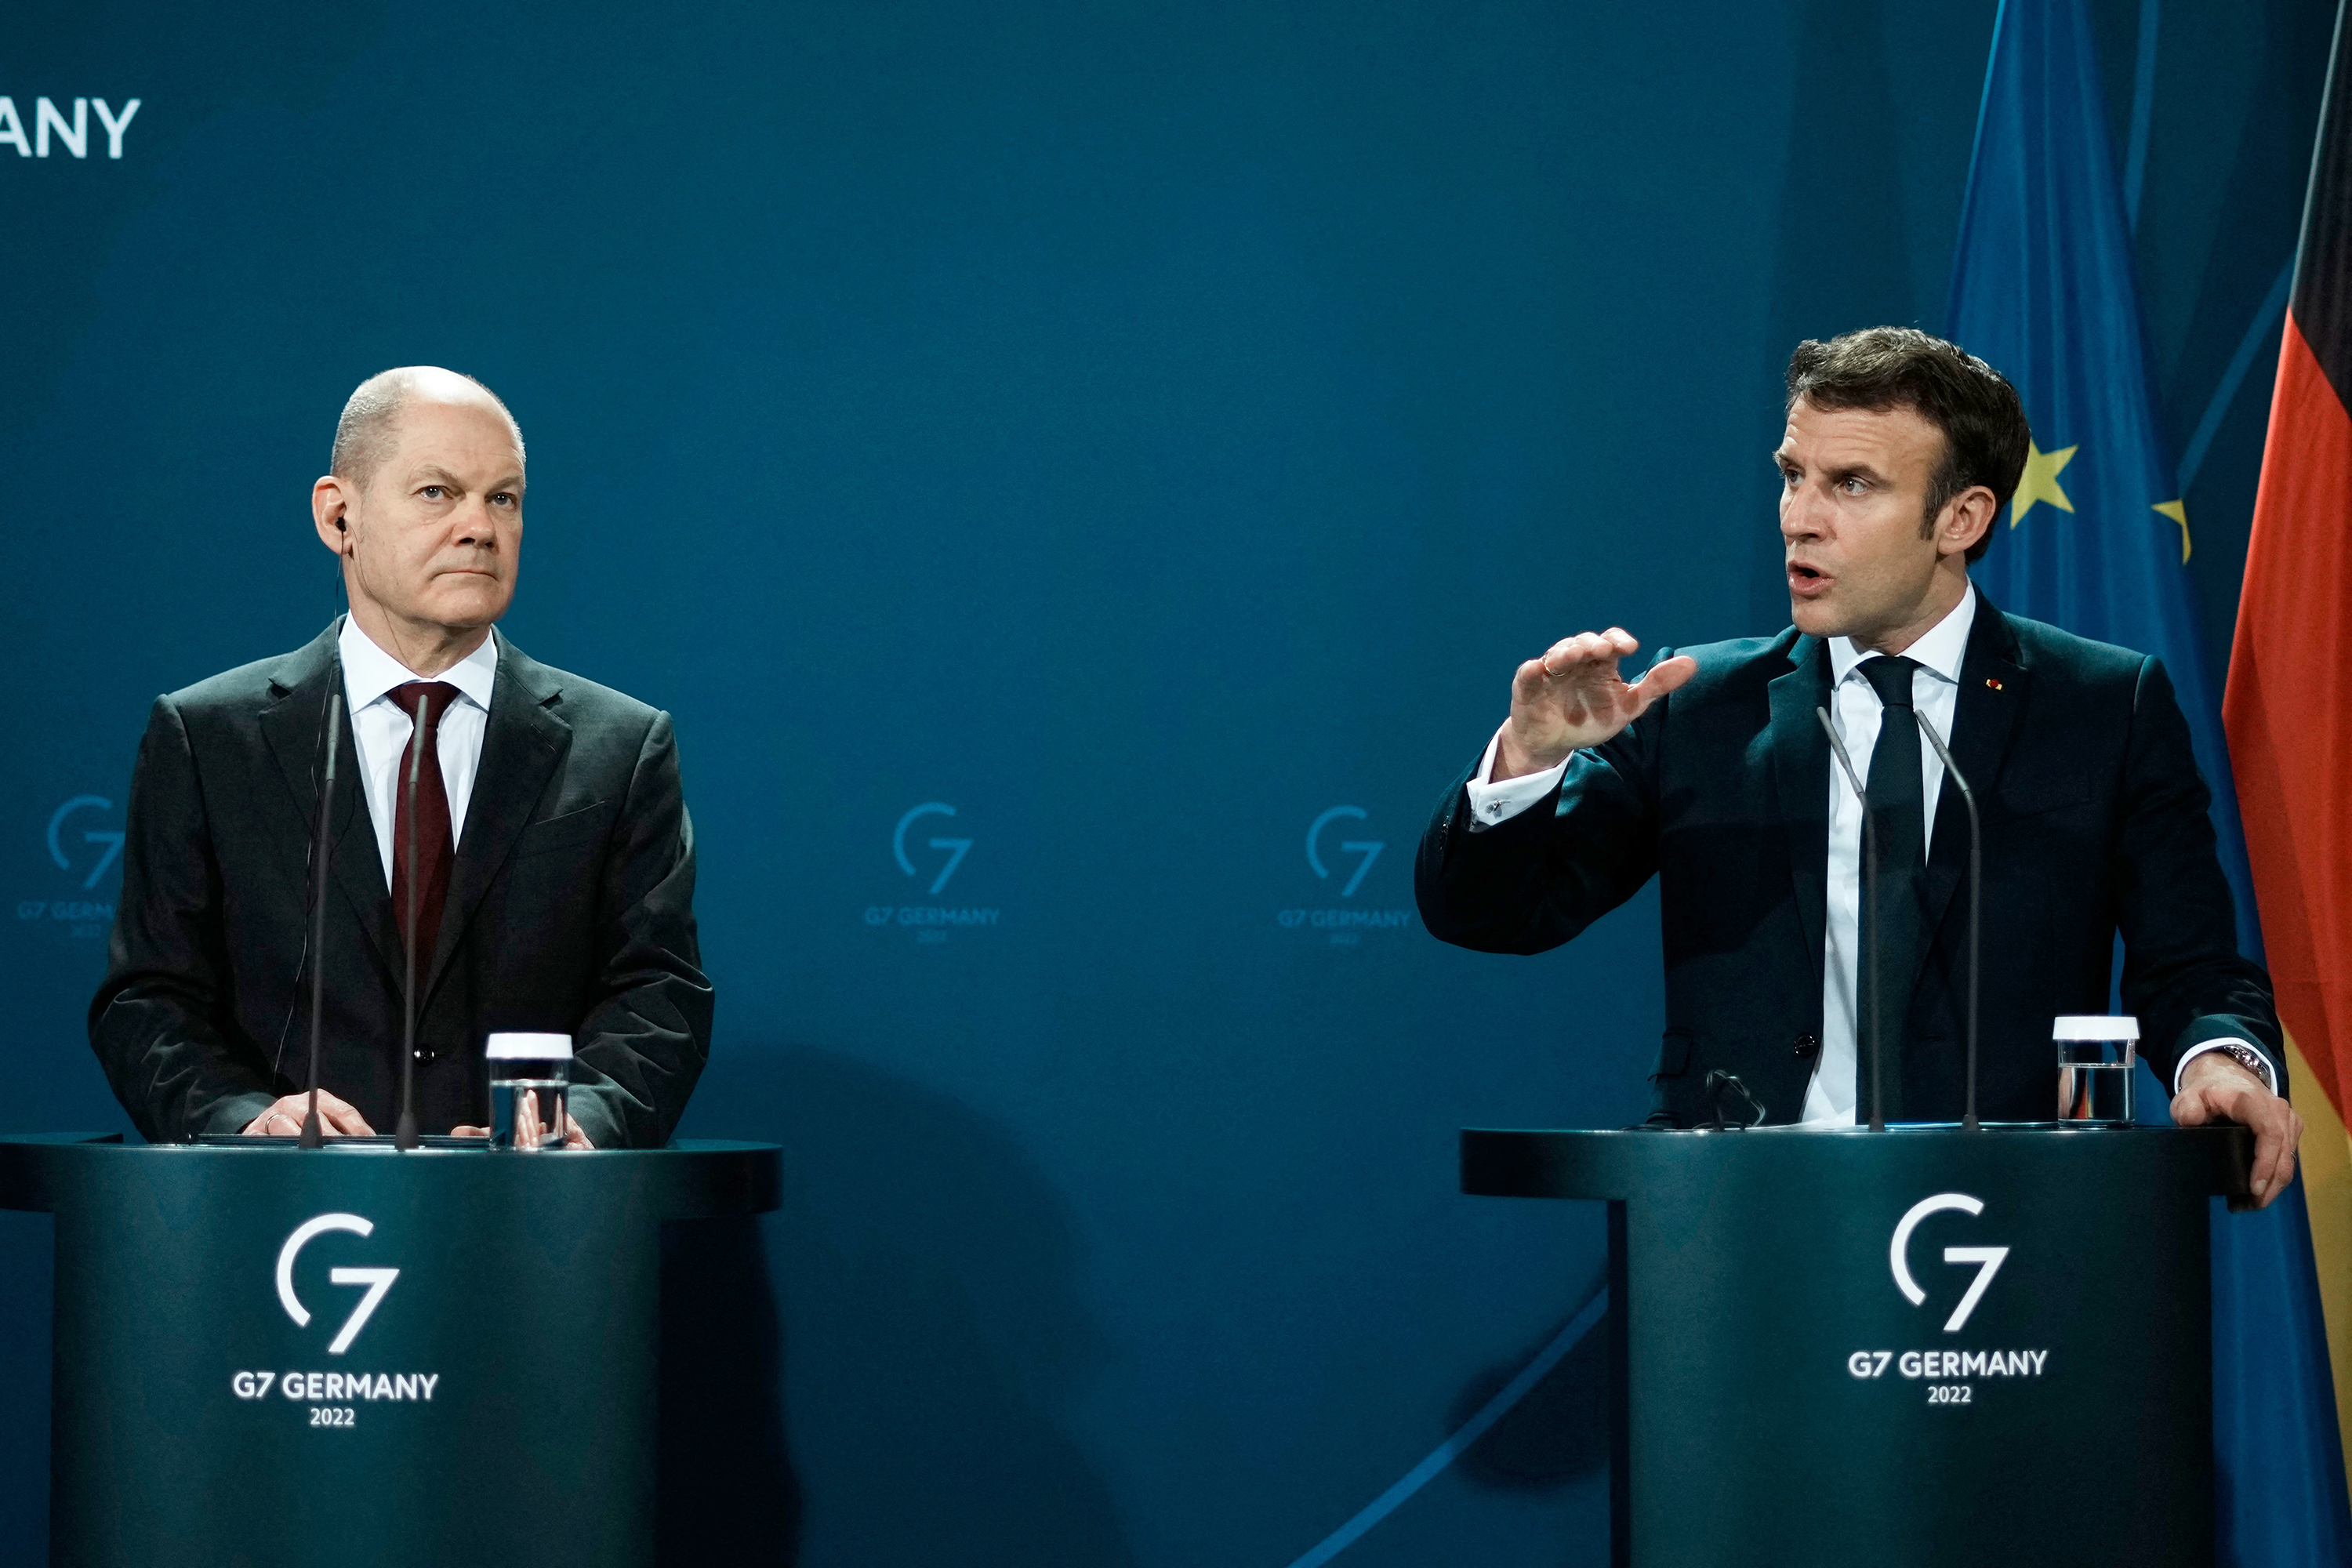 Les dirigeants français et allemands demandent un cessez-le-feu immédiat lors d’un appel à Poutine